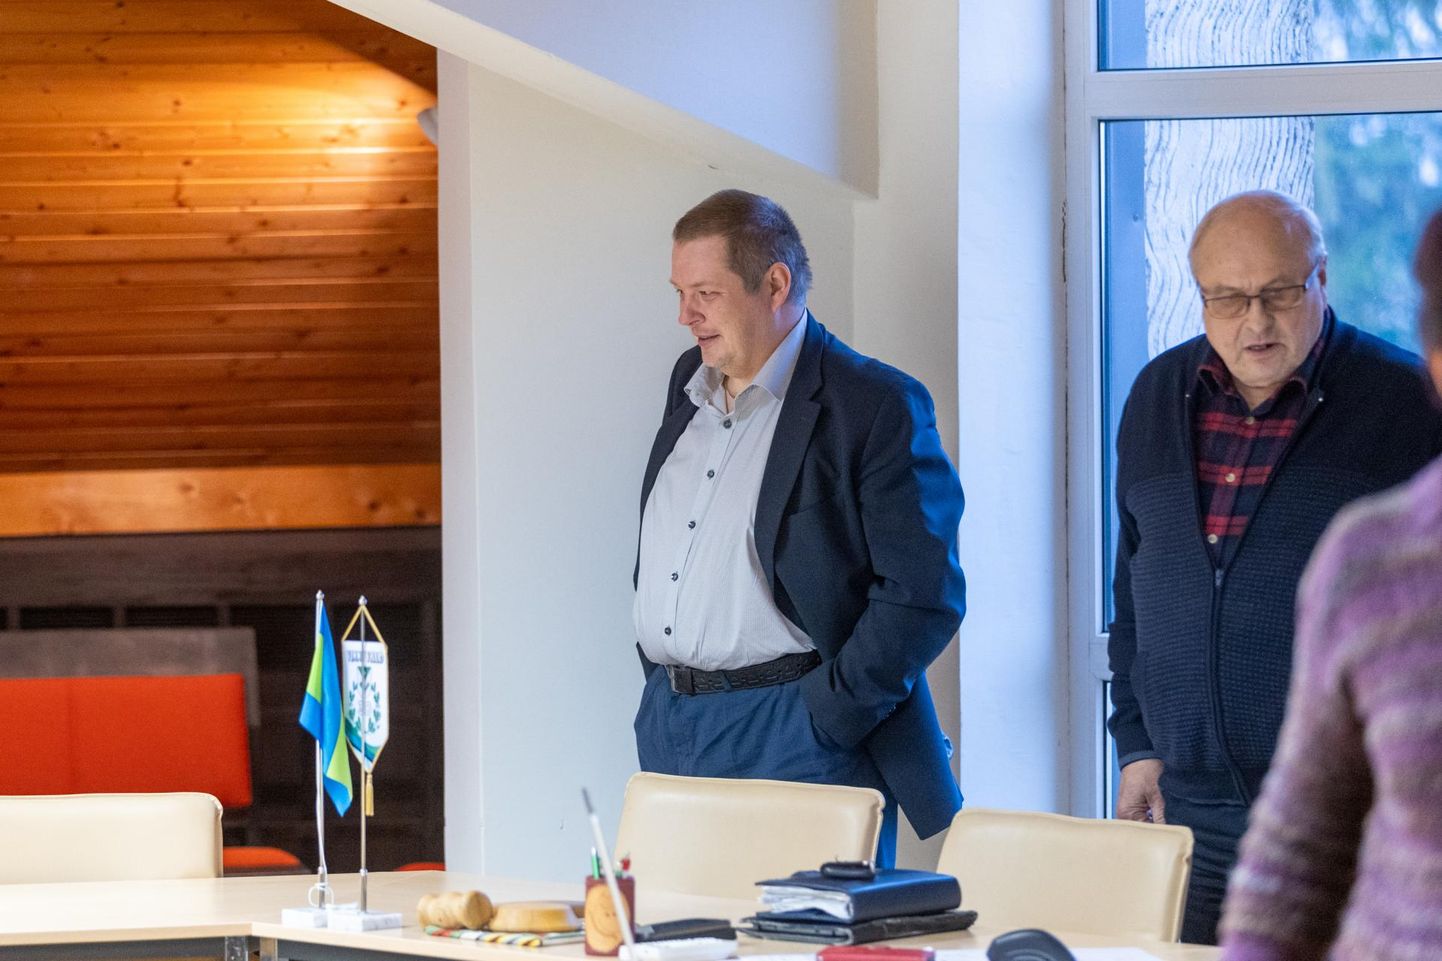 Istungile oli kutsutud ka uue vallavanema kandidaat Erki Savisaar (vasakul), kuid volikogu aseesimehe Toomas Väinaste (paremal) eestvedamisel kuulutati istung ebaseaduslikuks ja vallavanema valimiseks ei läinudki.